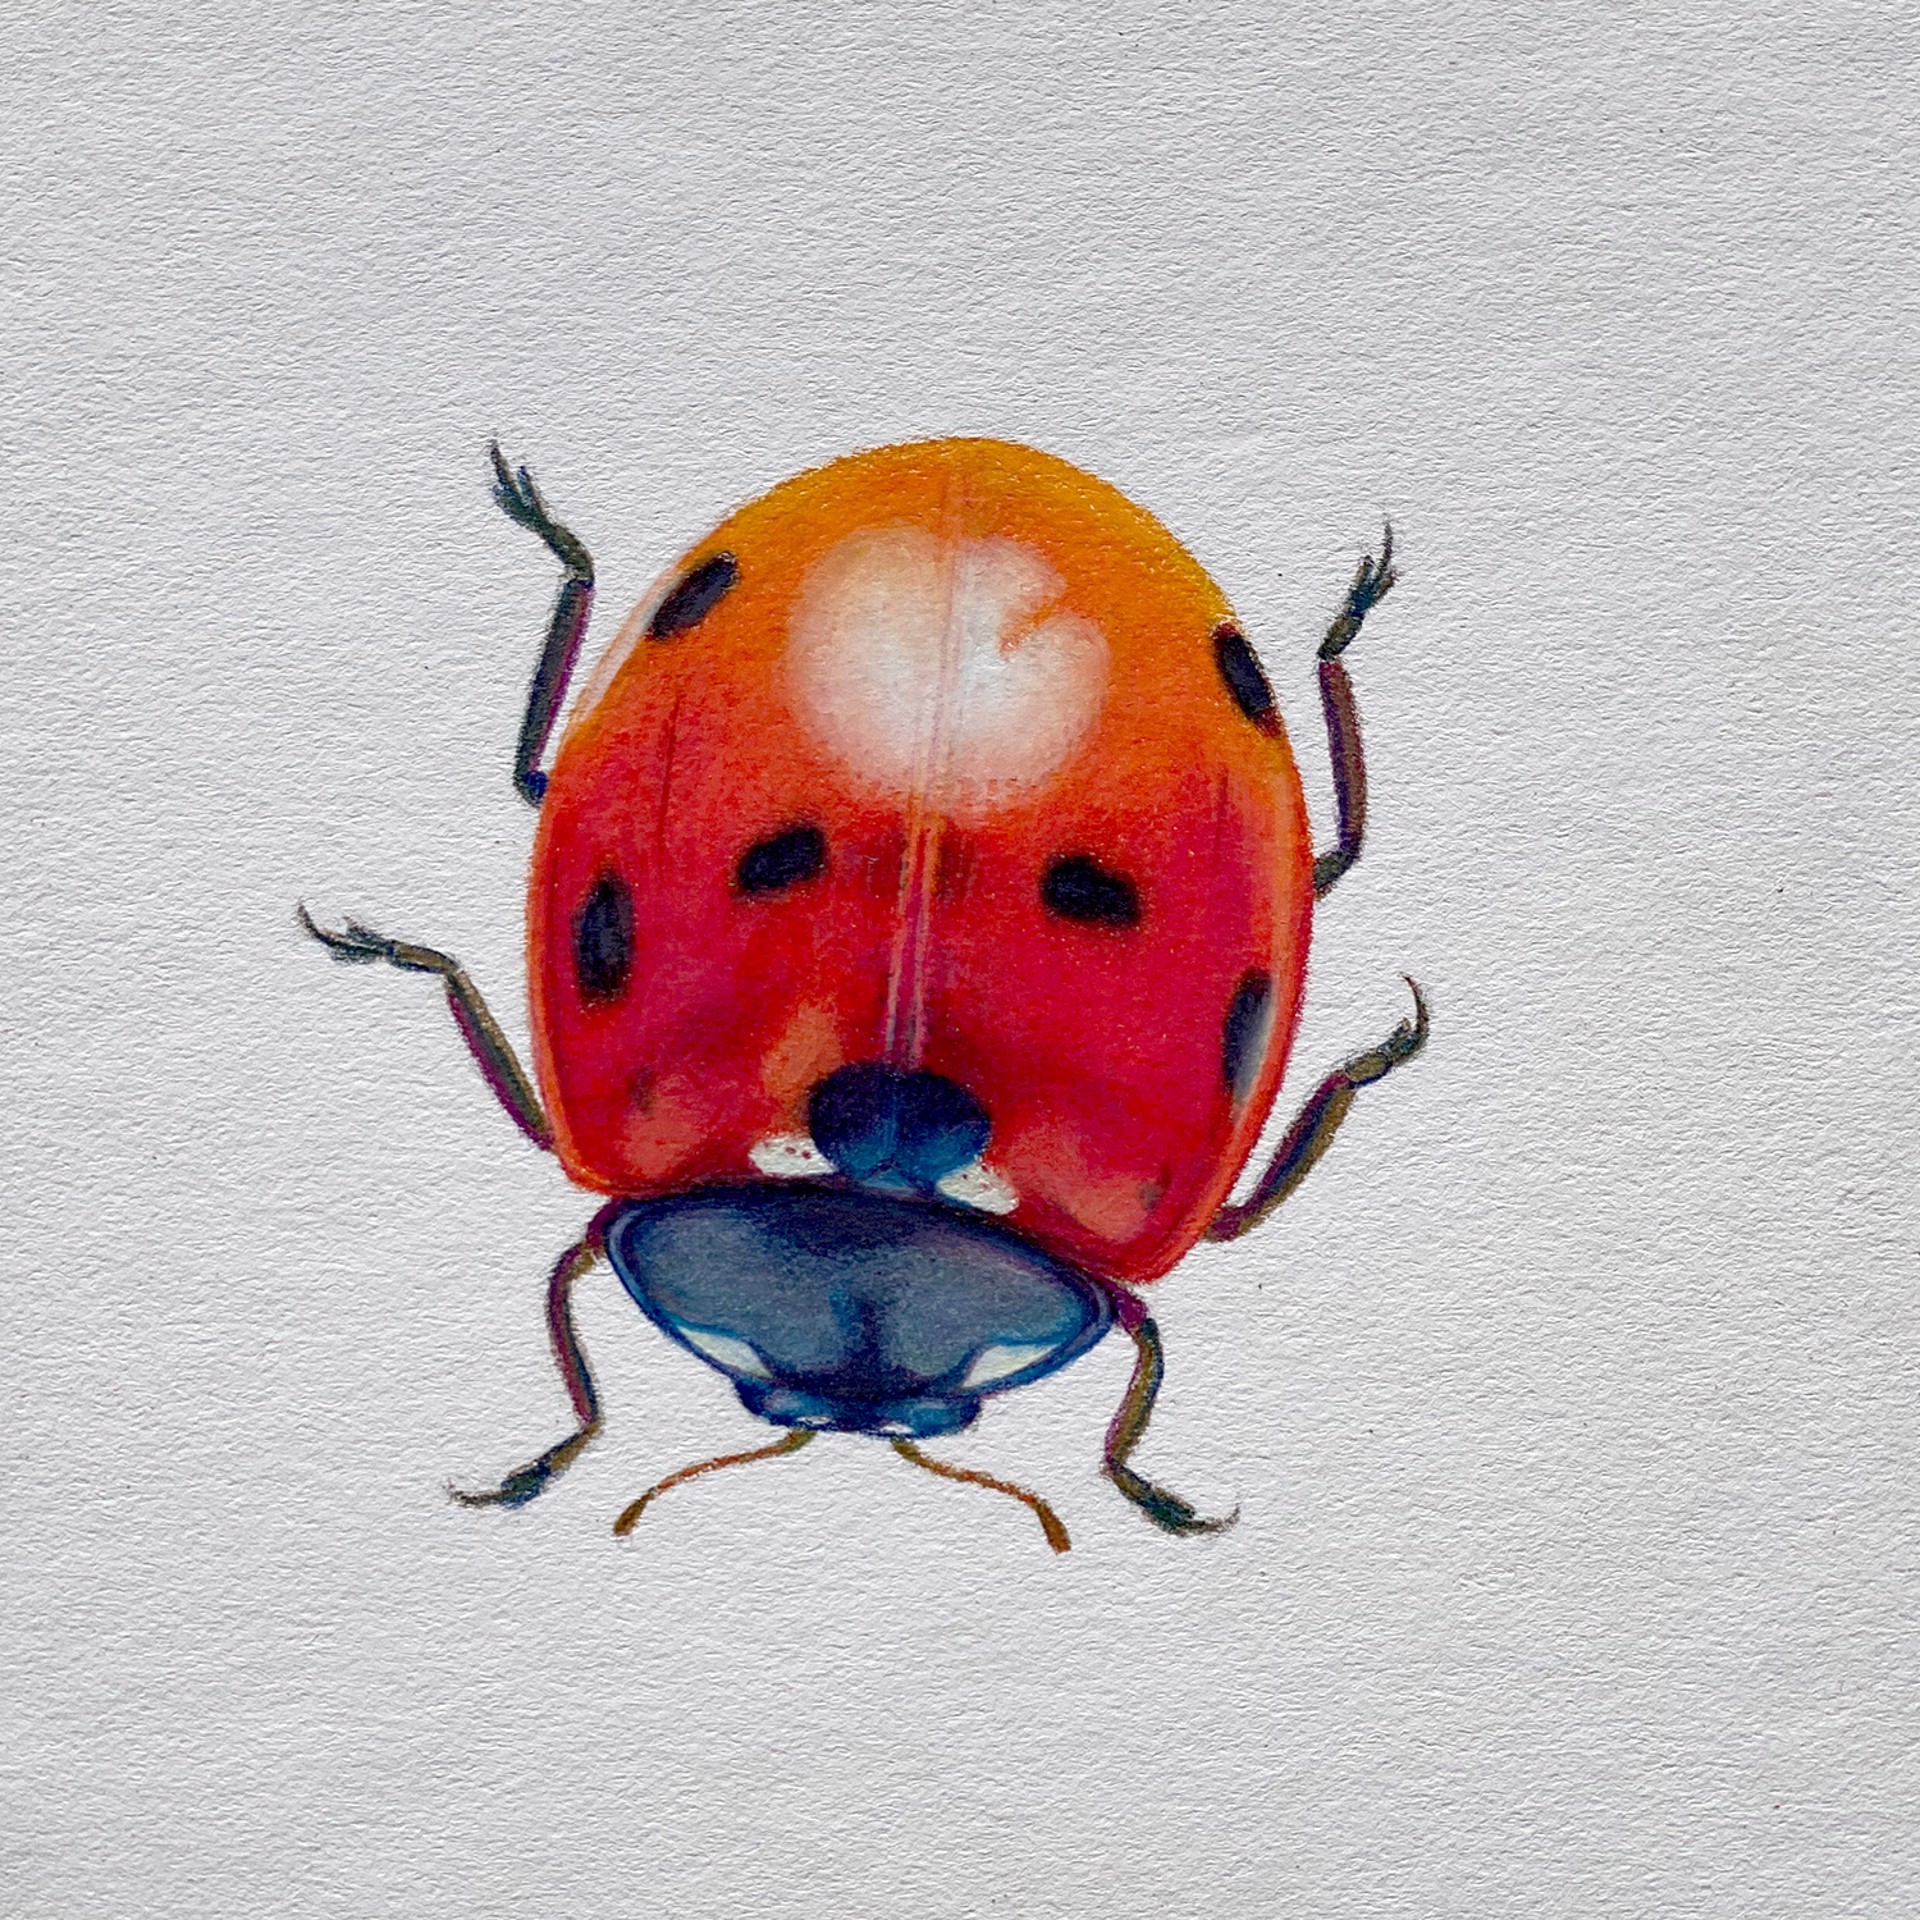 Coleoptera Chroma #7 by Hannah Hanlon